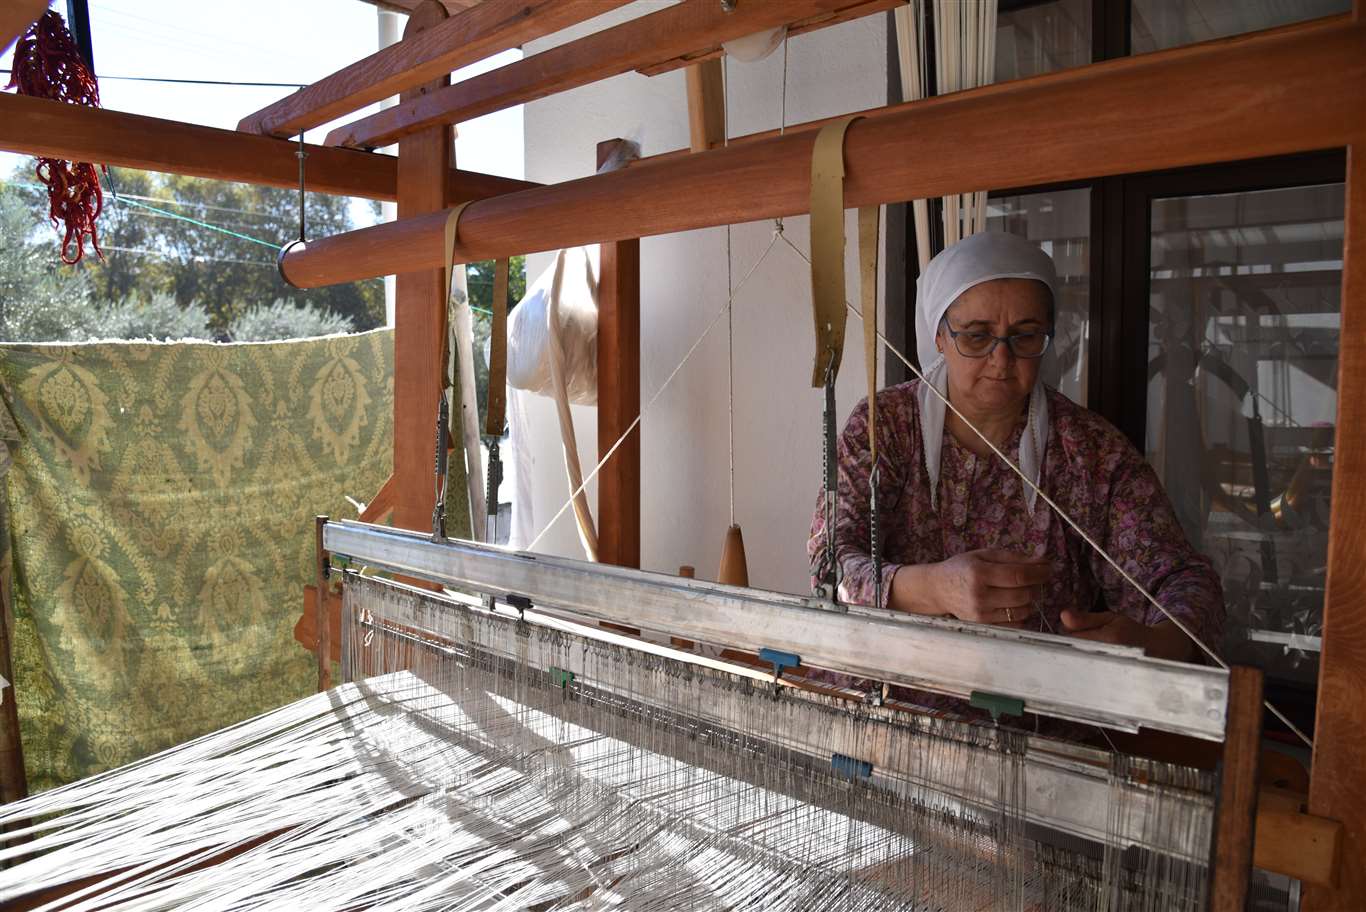       Muğla'nın geleneksel dokumaları, kadınların emeğiyle yaşatılıyor haberi